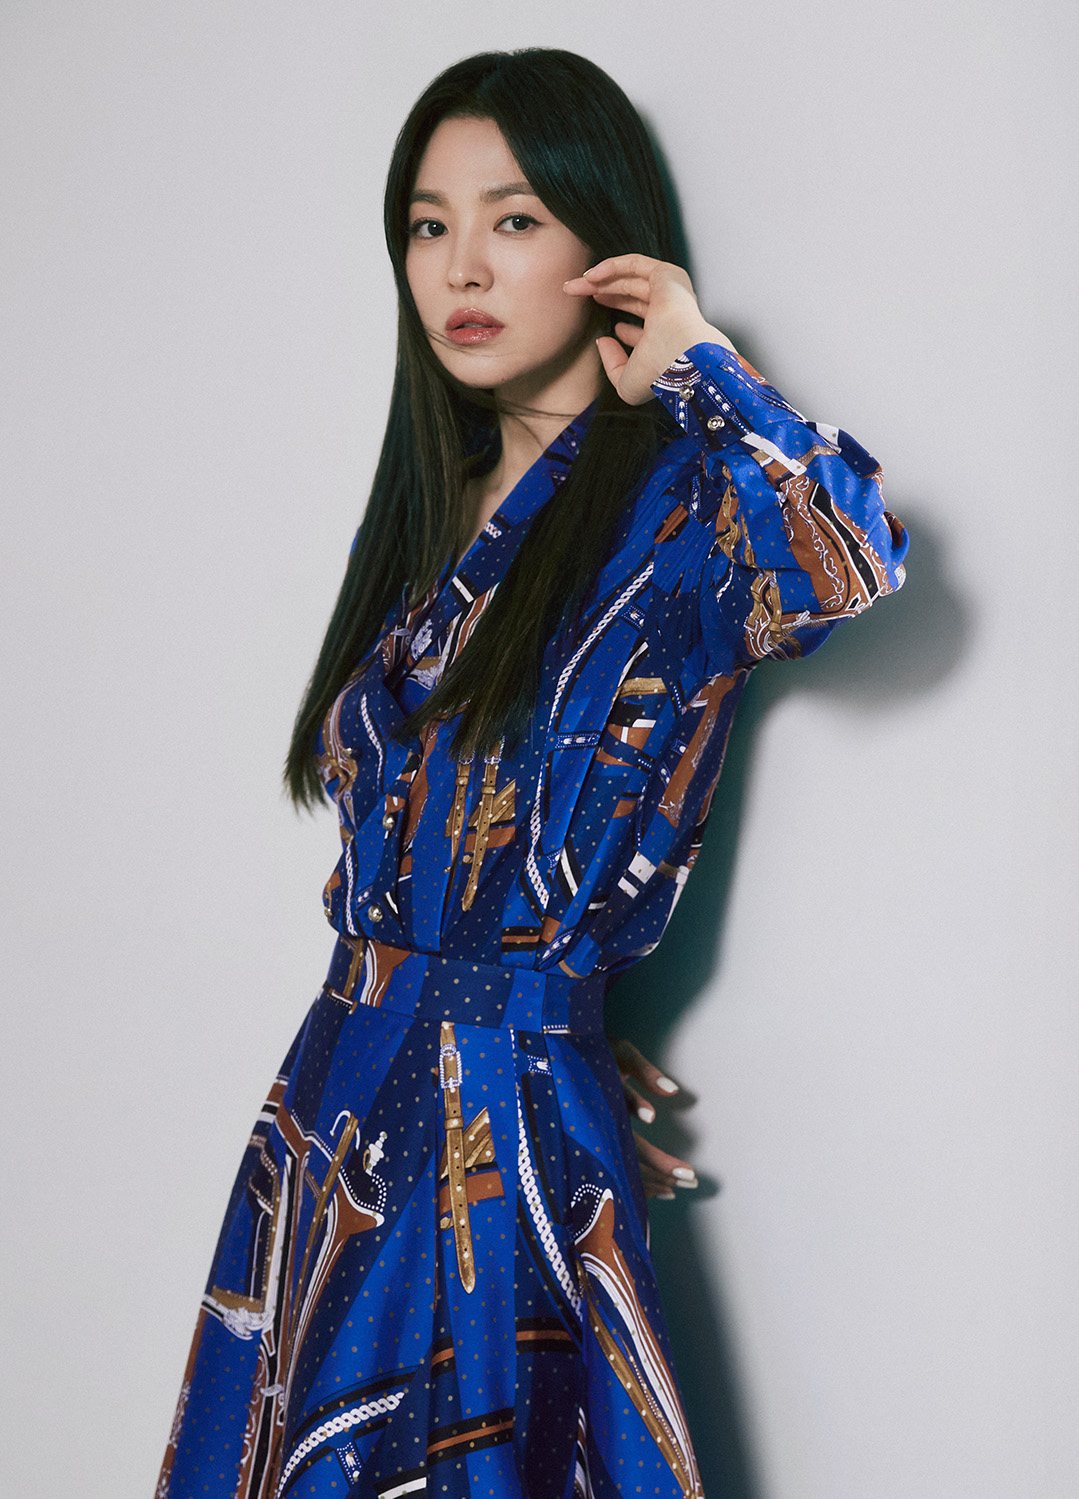 Đến Song Hye Kyo cũng mắc lỗi cơ bản với áo sơ mi, sơ hở là nội y biểu tình